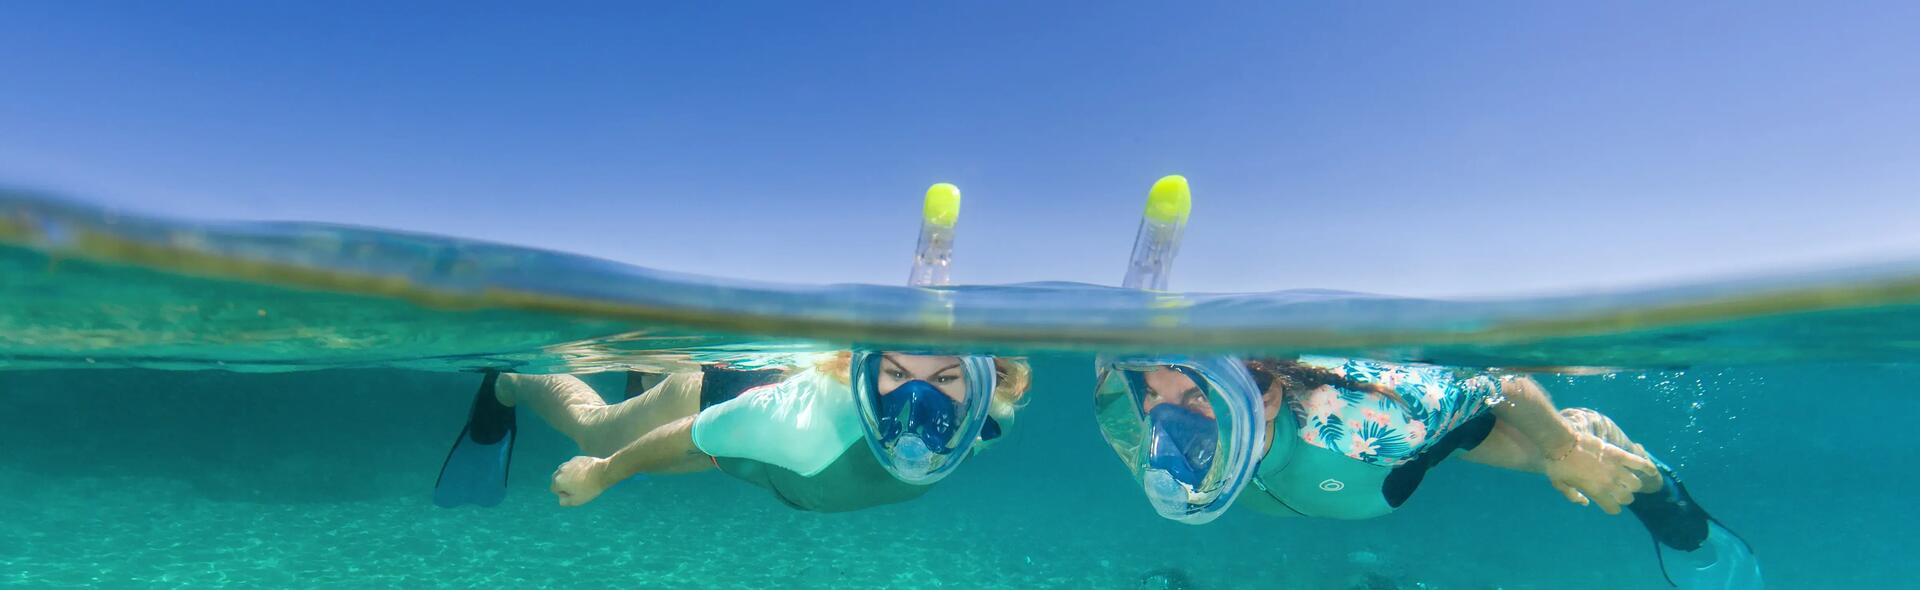 Comment choisir son masque de snorkeling ?